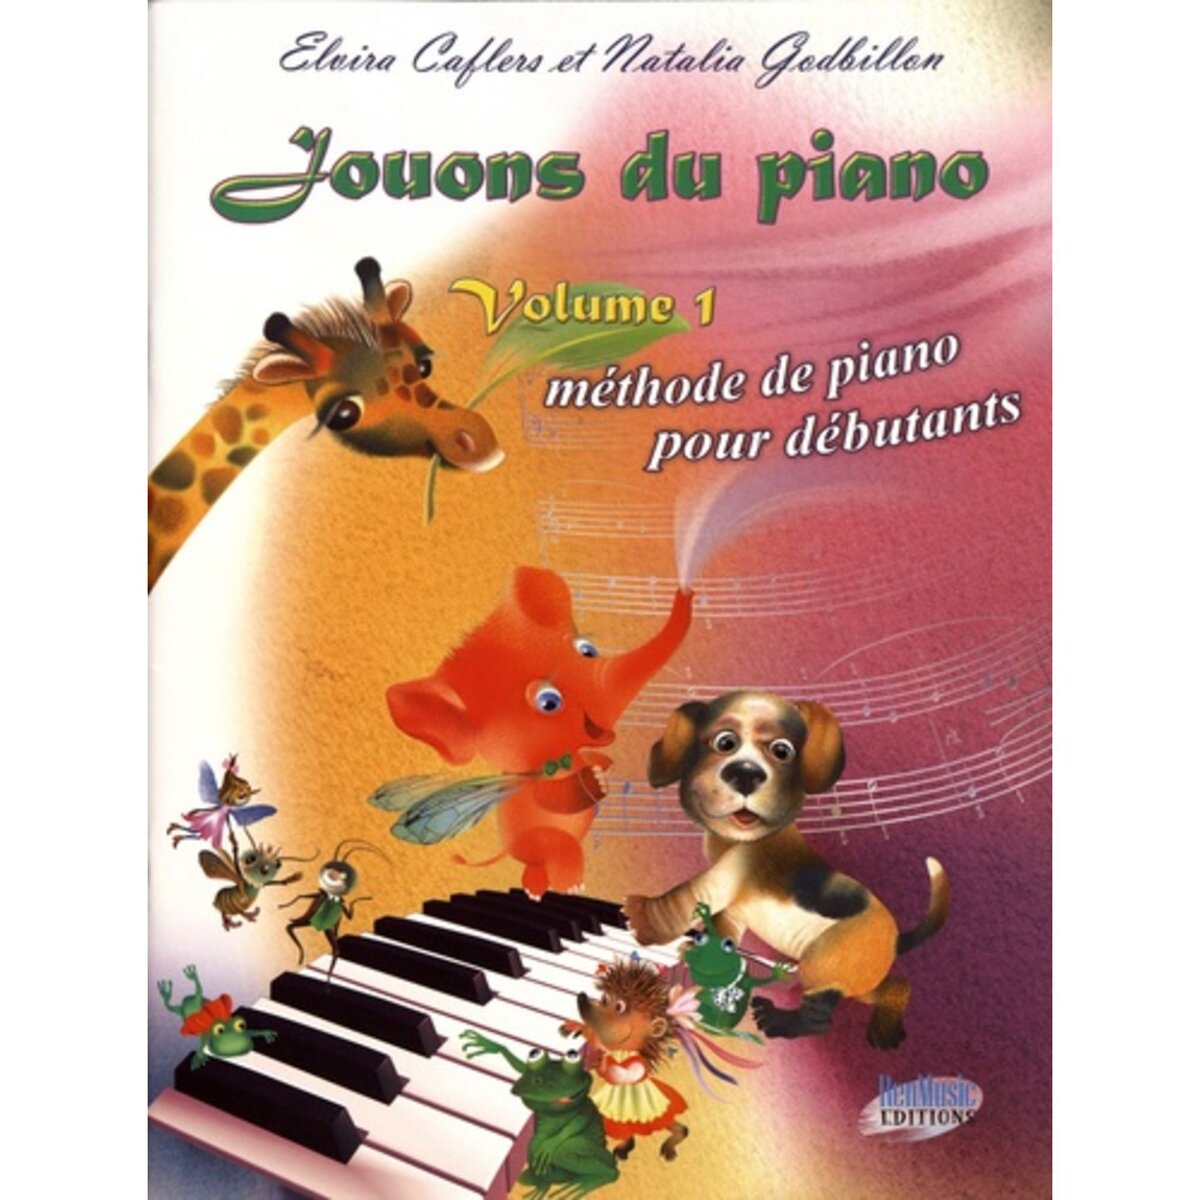 Le piano sans professeur - Roger EVANS - Livre - Les Instruments